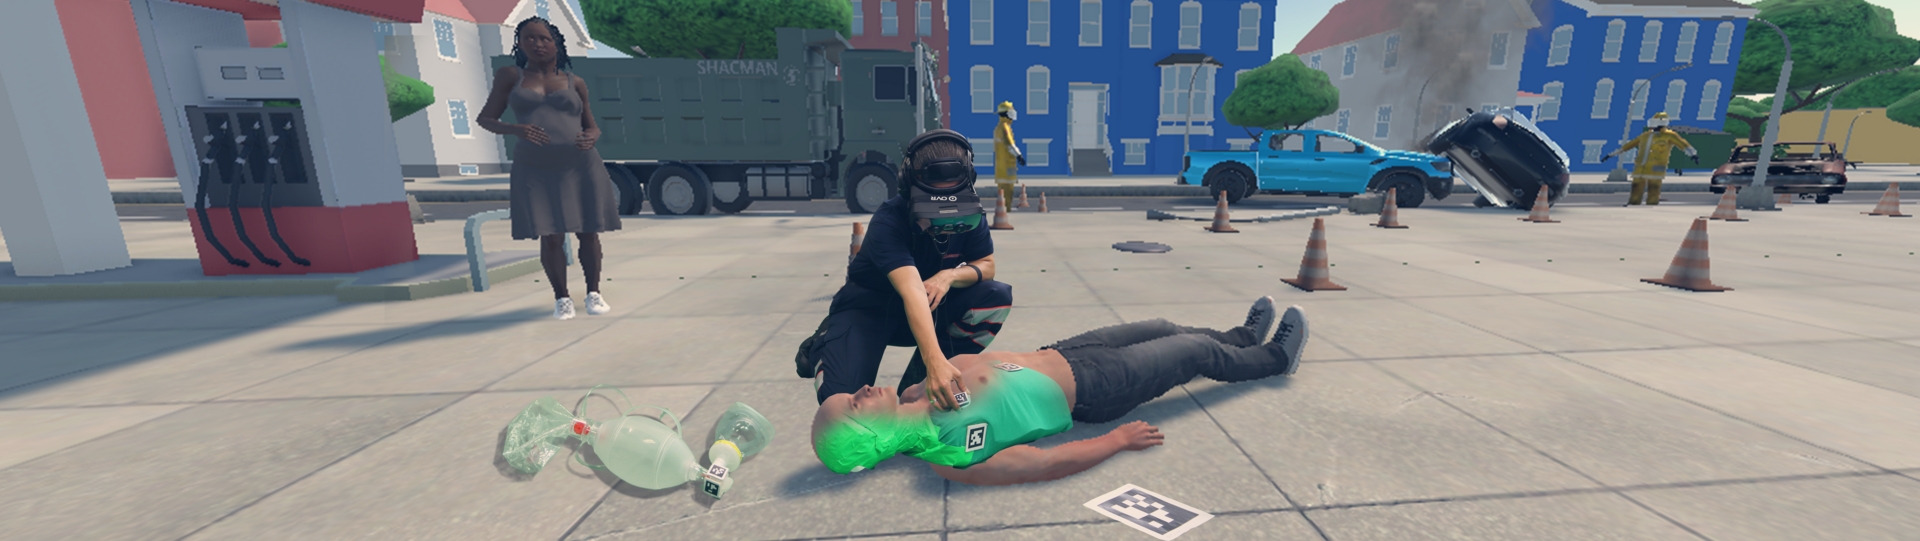 Ein Übungsszenario in der Virtual Reality: Ein Johanniter hilft einer verletzten Person, die am Boden liegt.